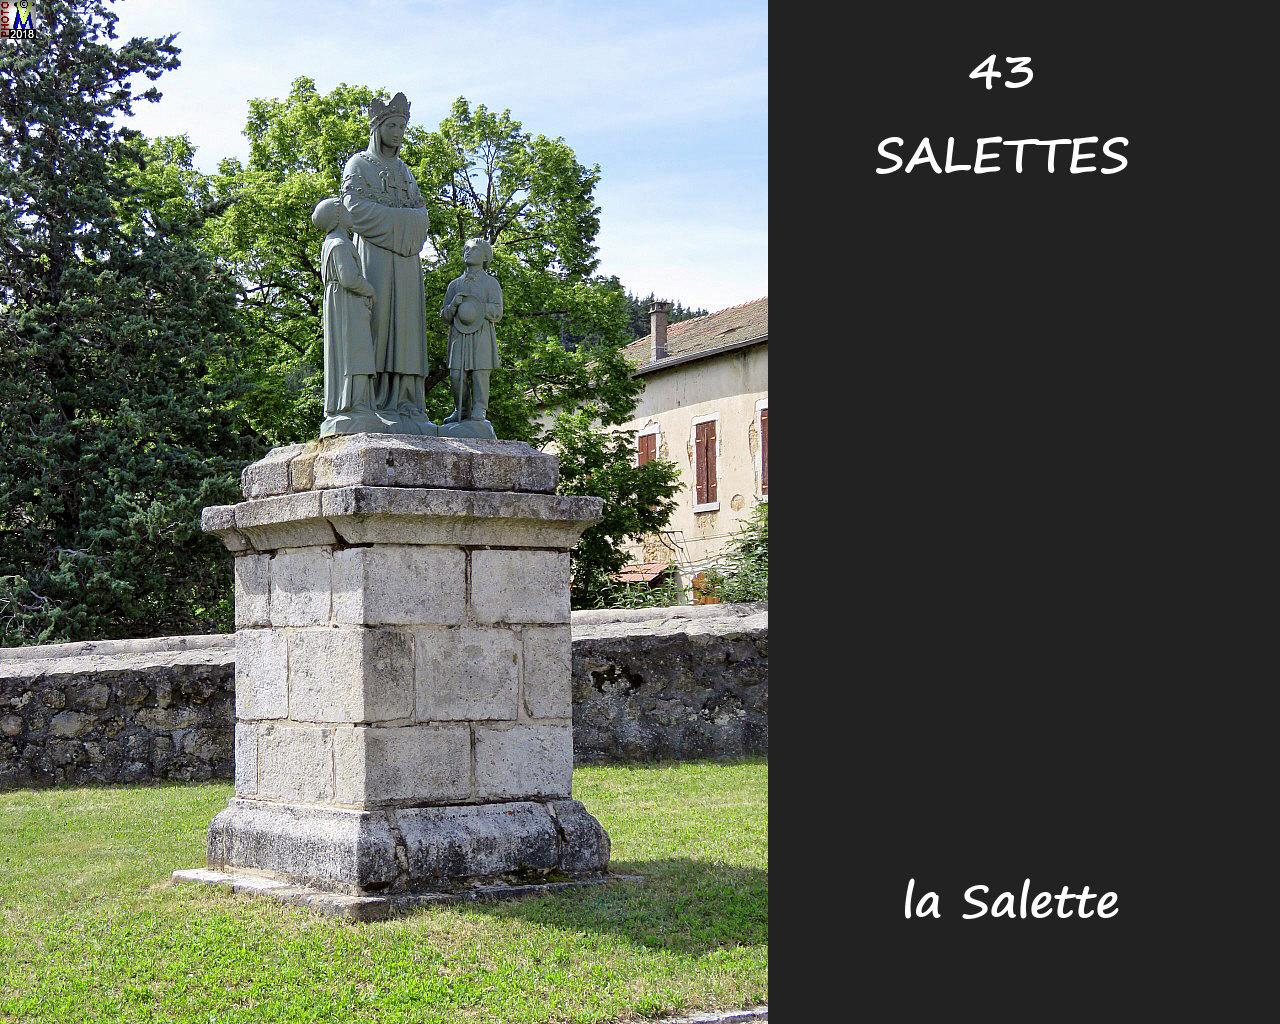 43SALETTES_salette_100.jpg